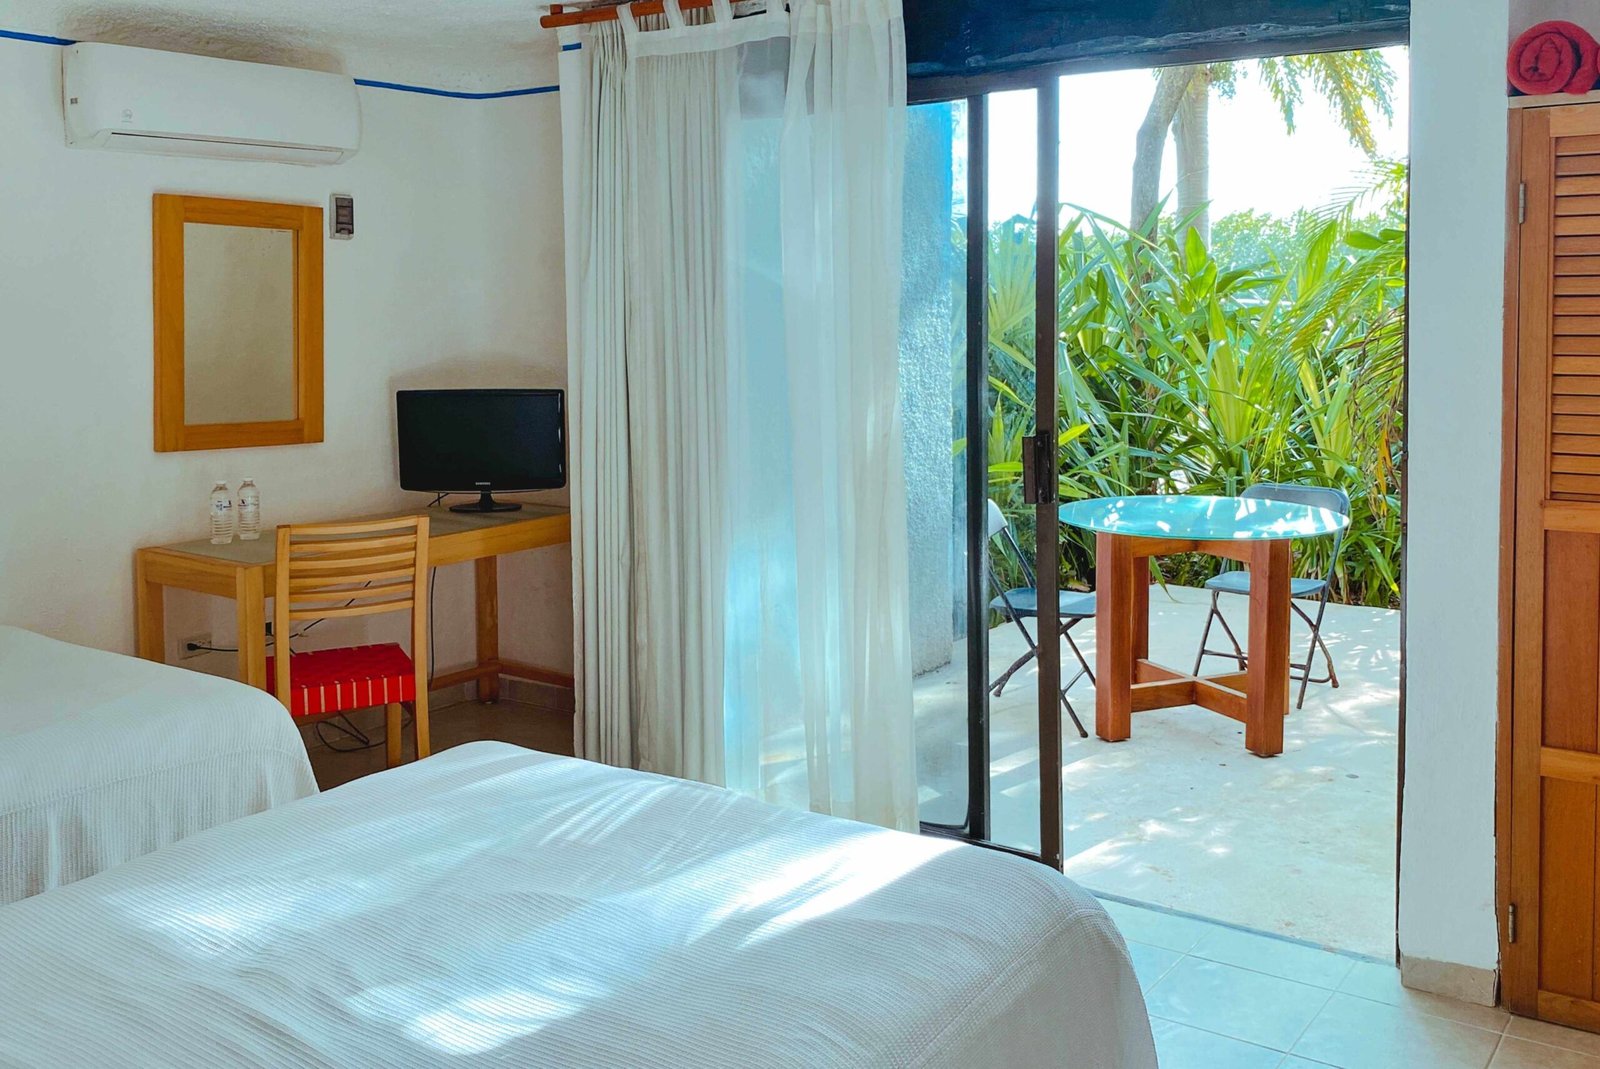 Hotel económico para viajar barato en Cancún